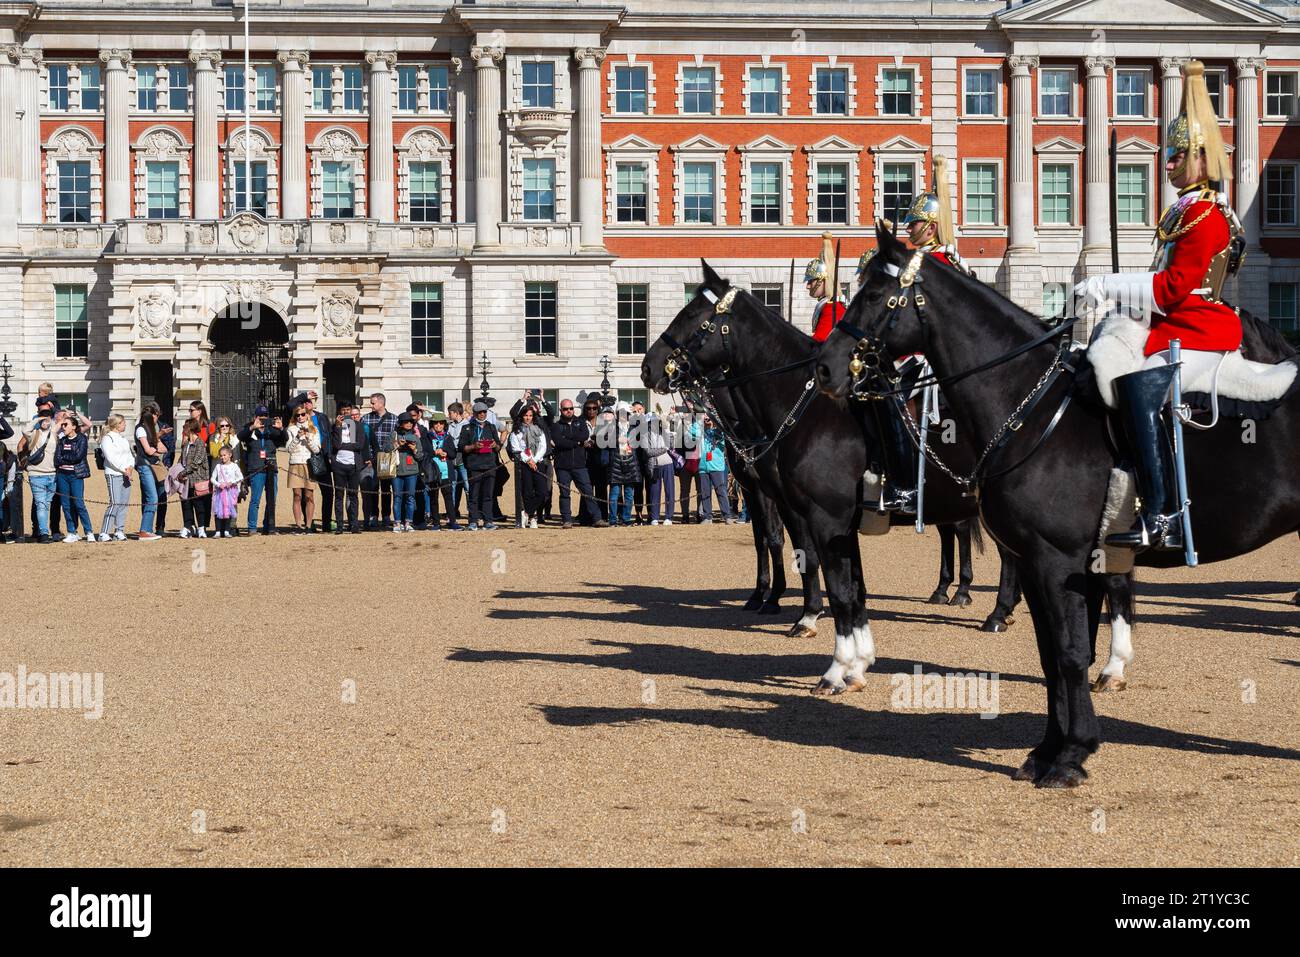 Public regardant la cérémonie de la relève de la garde, Horse Guards Parade, Londres, Royaume-Uni. Foule de visiteurs regarder l'événement traditionnel Banque D'Images